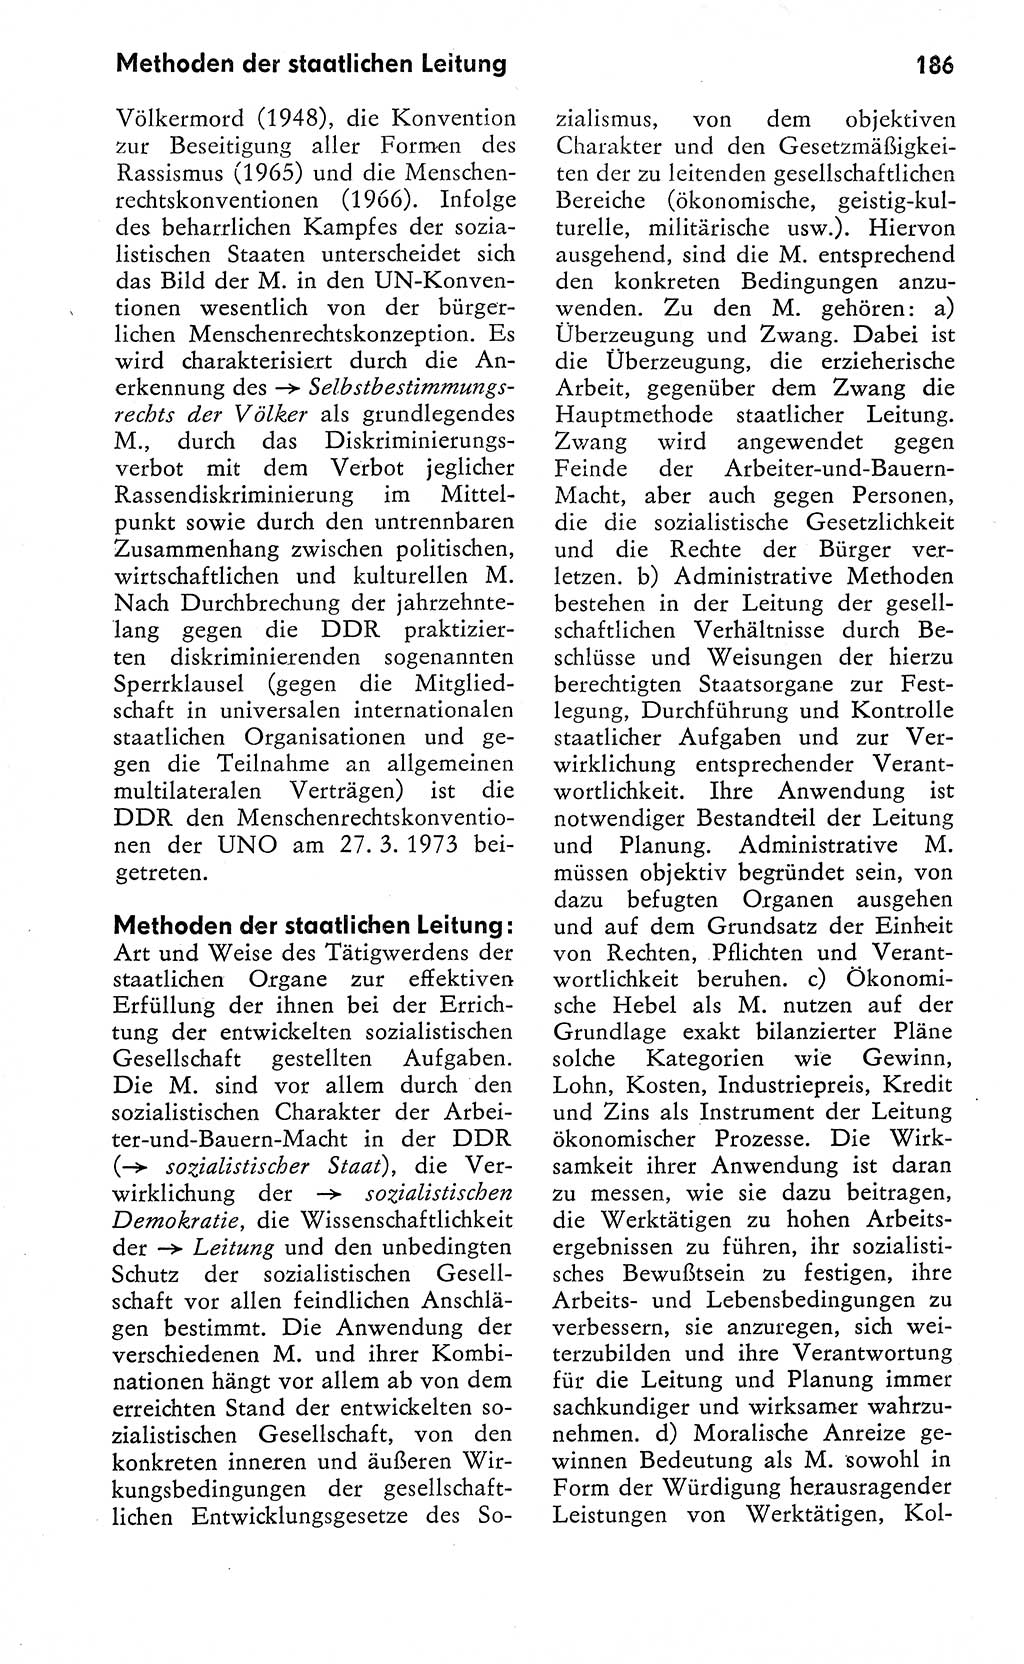 Wörterbuch zum sozialistischen Staat [Deutsche Demokratische Republik (DDR)] 1974, Seite 186 (Wb. soz. St. DDR 1974, S. 186)